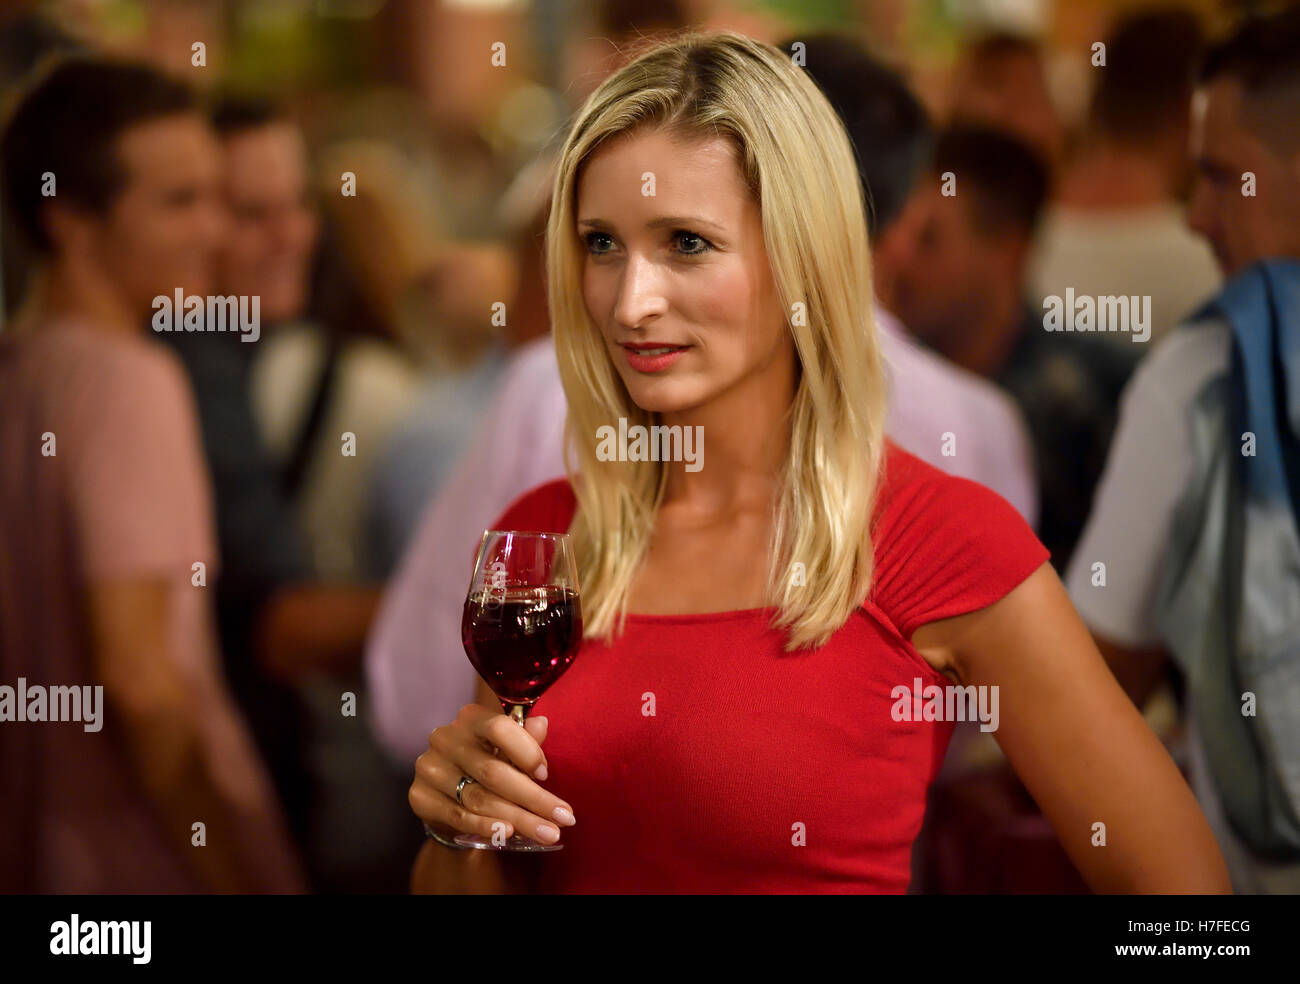 Mujer frustrada con copa de vino, un grupo de hombres detrás, Alemania Foto de stock